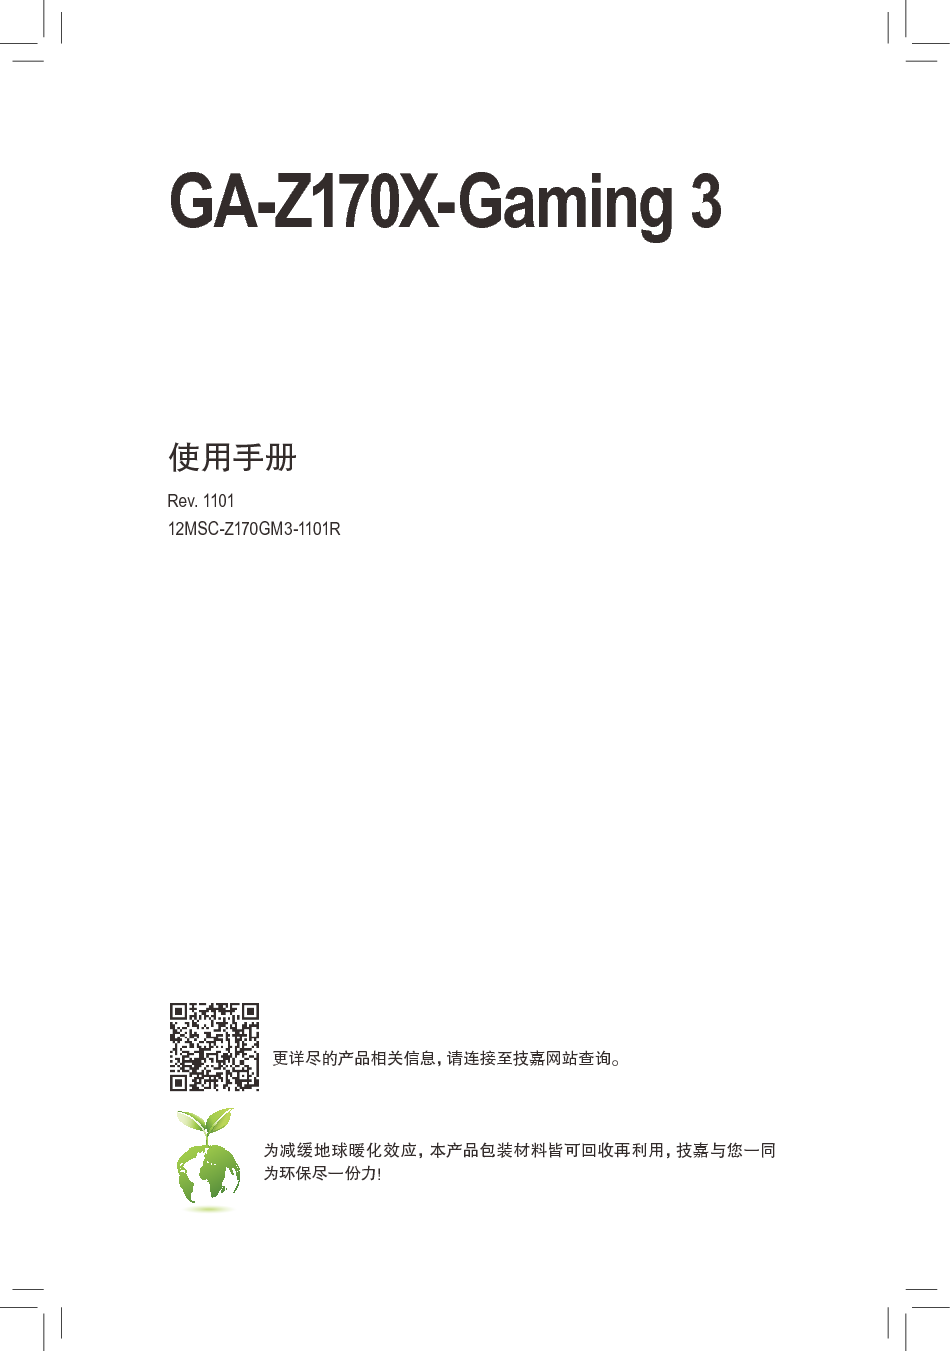 技嘉 Gigabyte GA-Z170X-Gaming 3 1101版 使用手册 封面